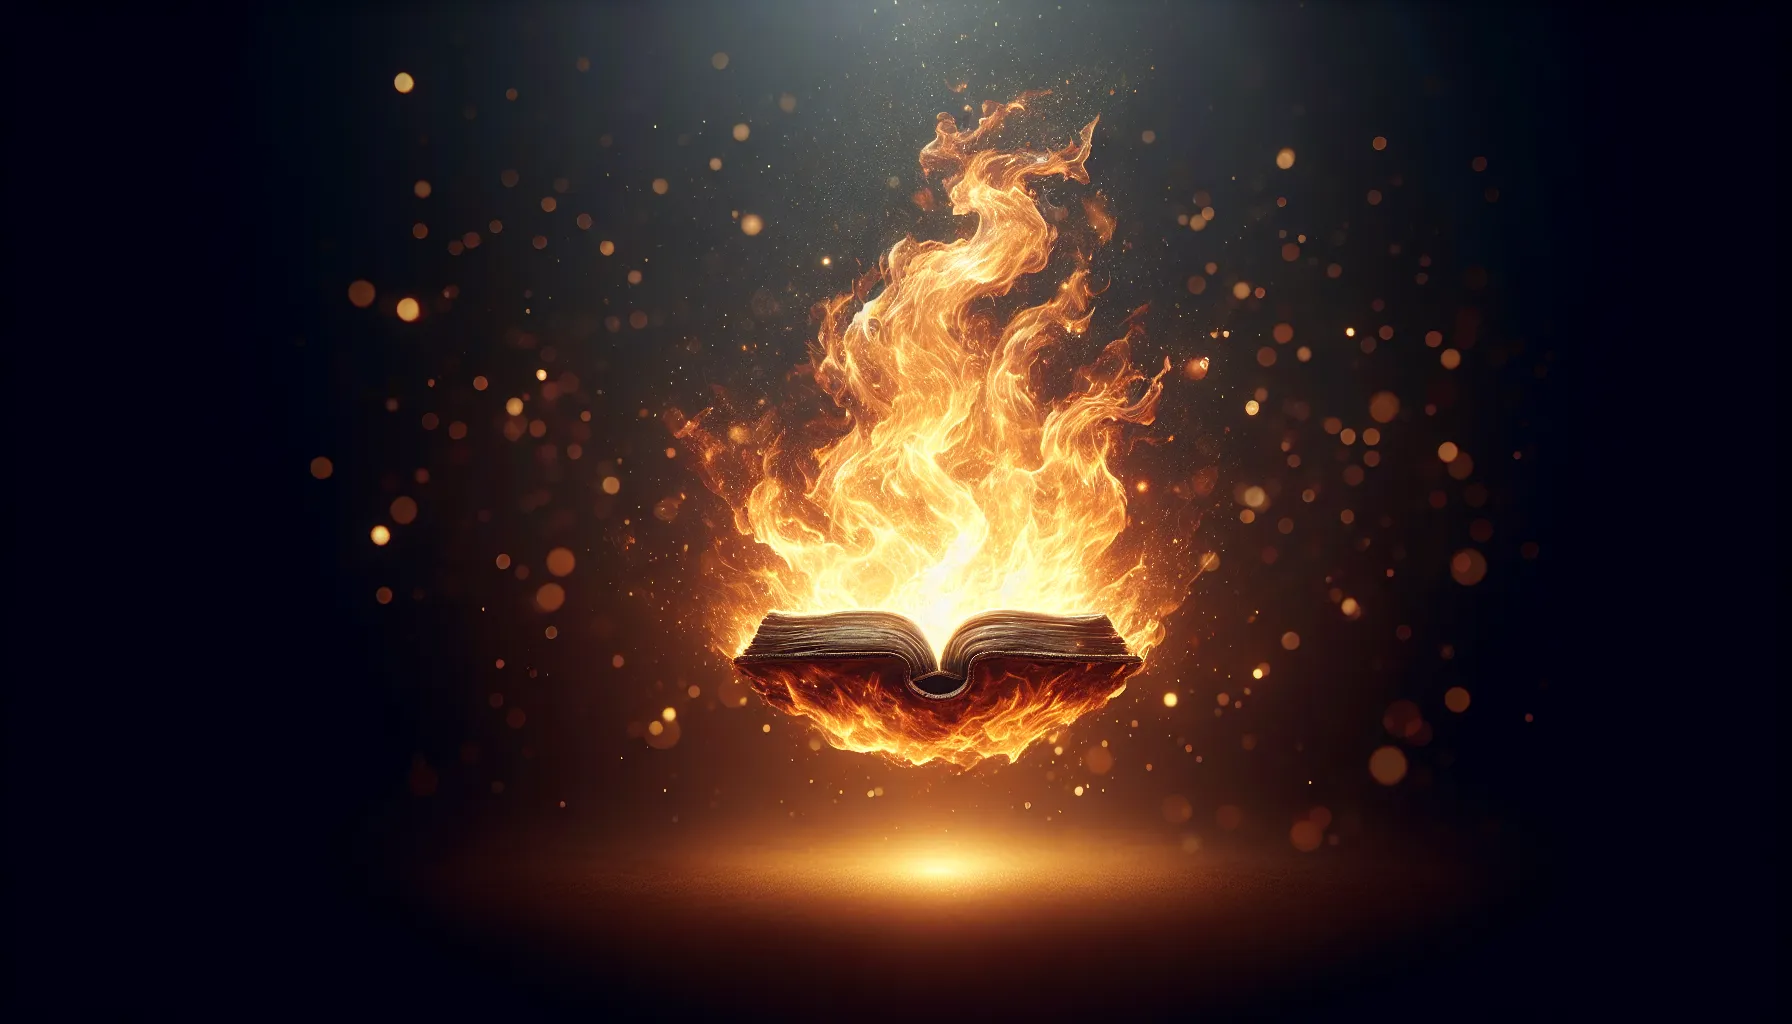 Imagen ilustrativa de una llama ardiente simbolizando la transformación del Espíritu Santo como fuego en la Biblia.